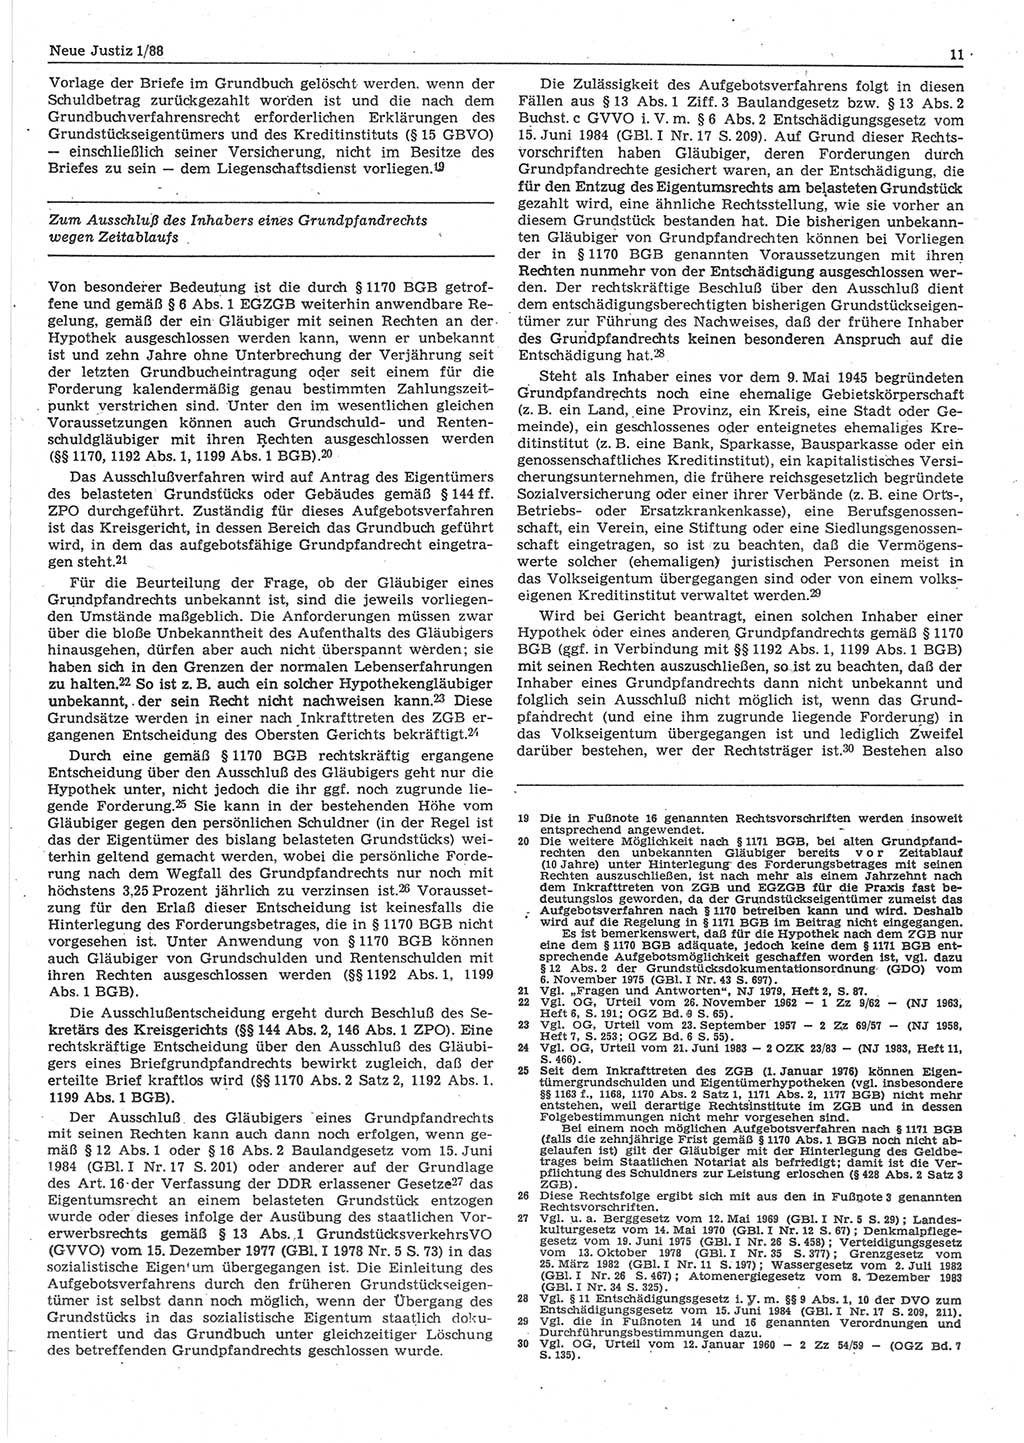 Neue Justiz (NJ), Zeitschrift für sozialistisches Recht und Gesetzlichkeit [Deutsche Demokratische Republik (DDR)], 42. Jahrgang 1988, Seite 11 (NJ DDR 1988, S. 11)